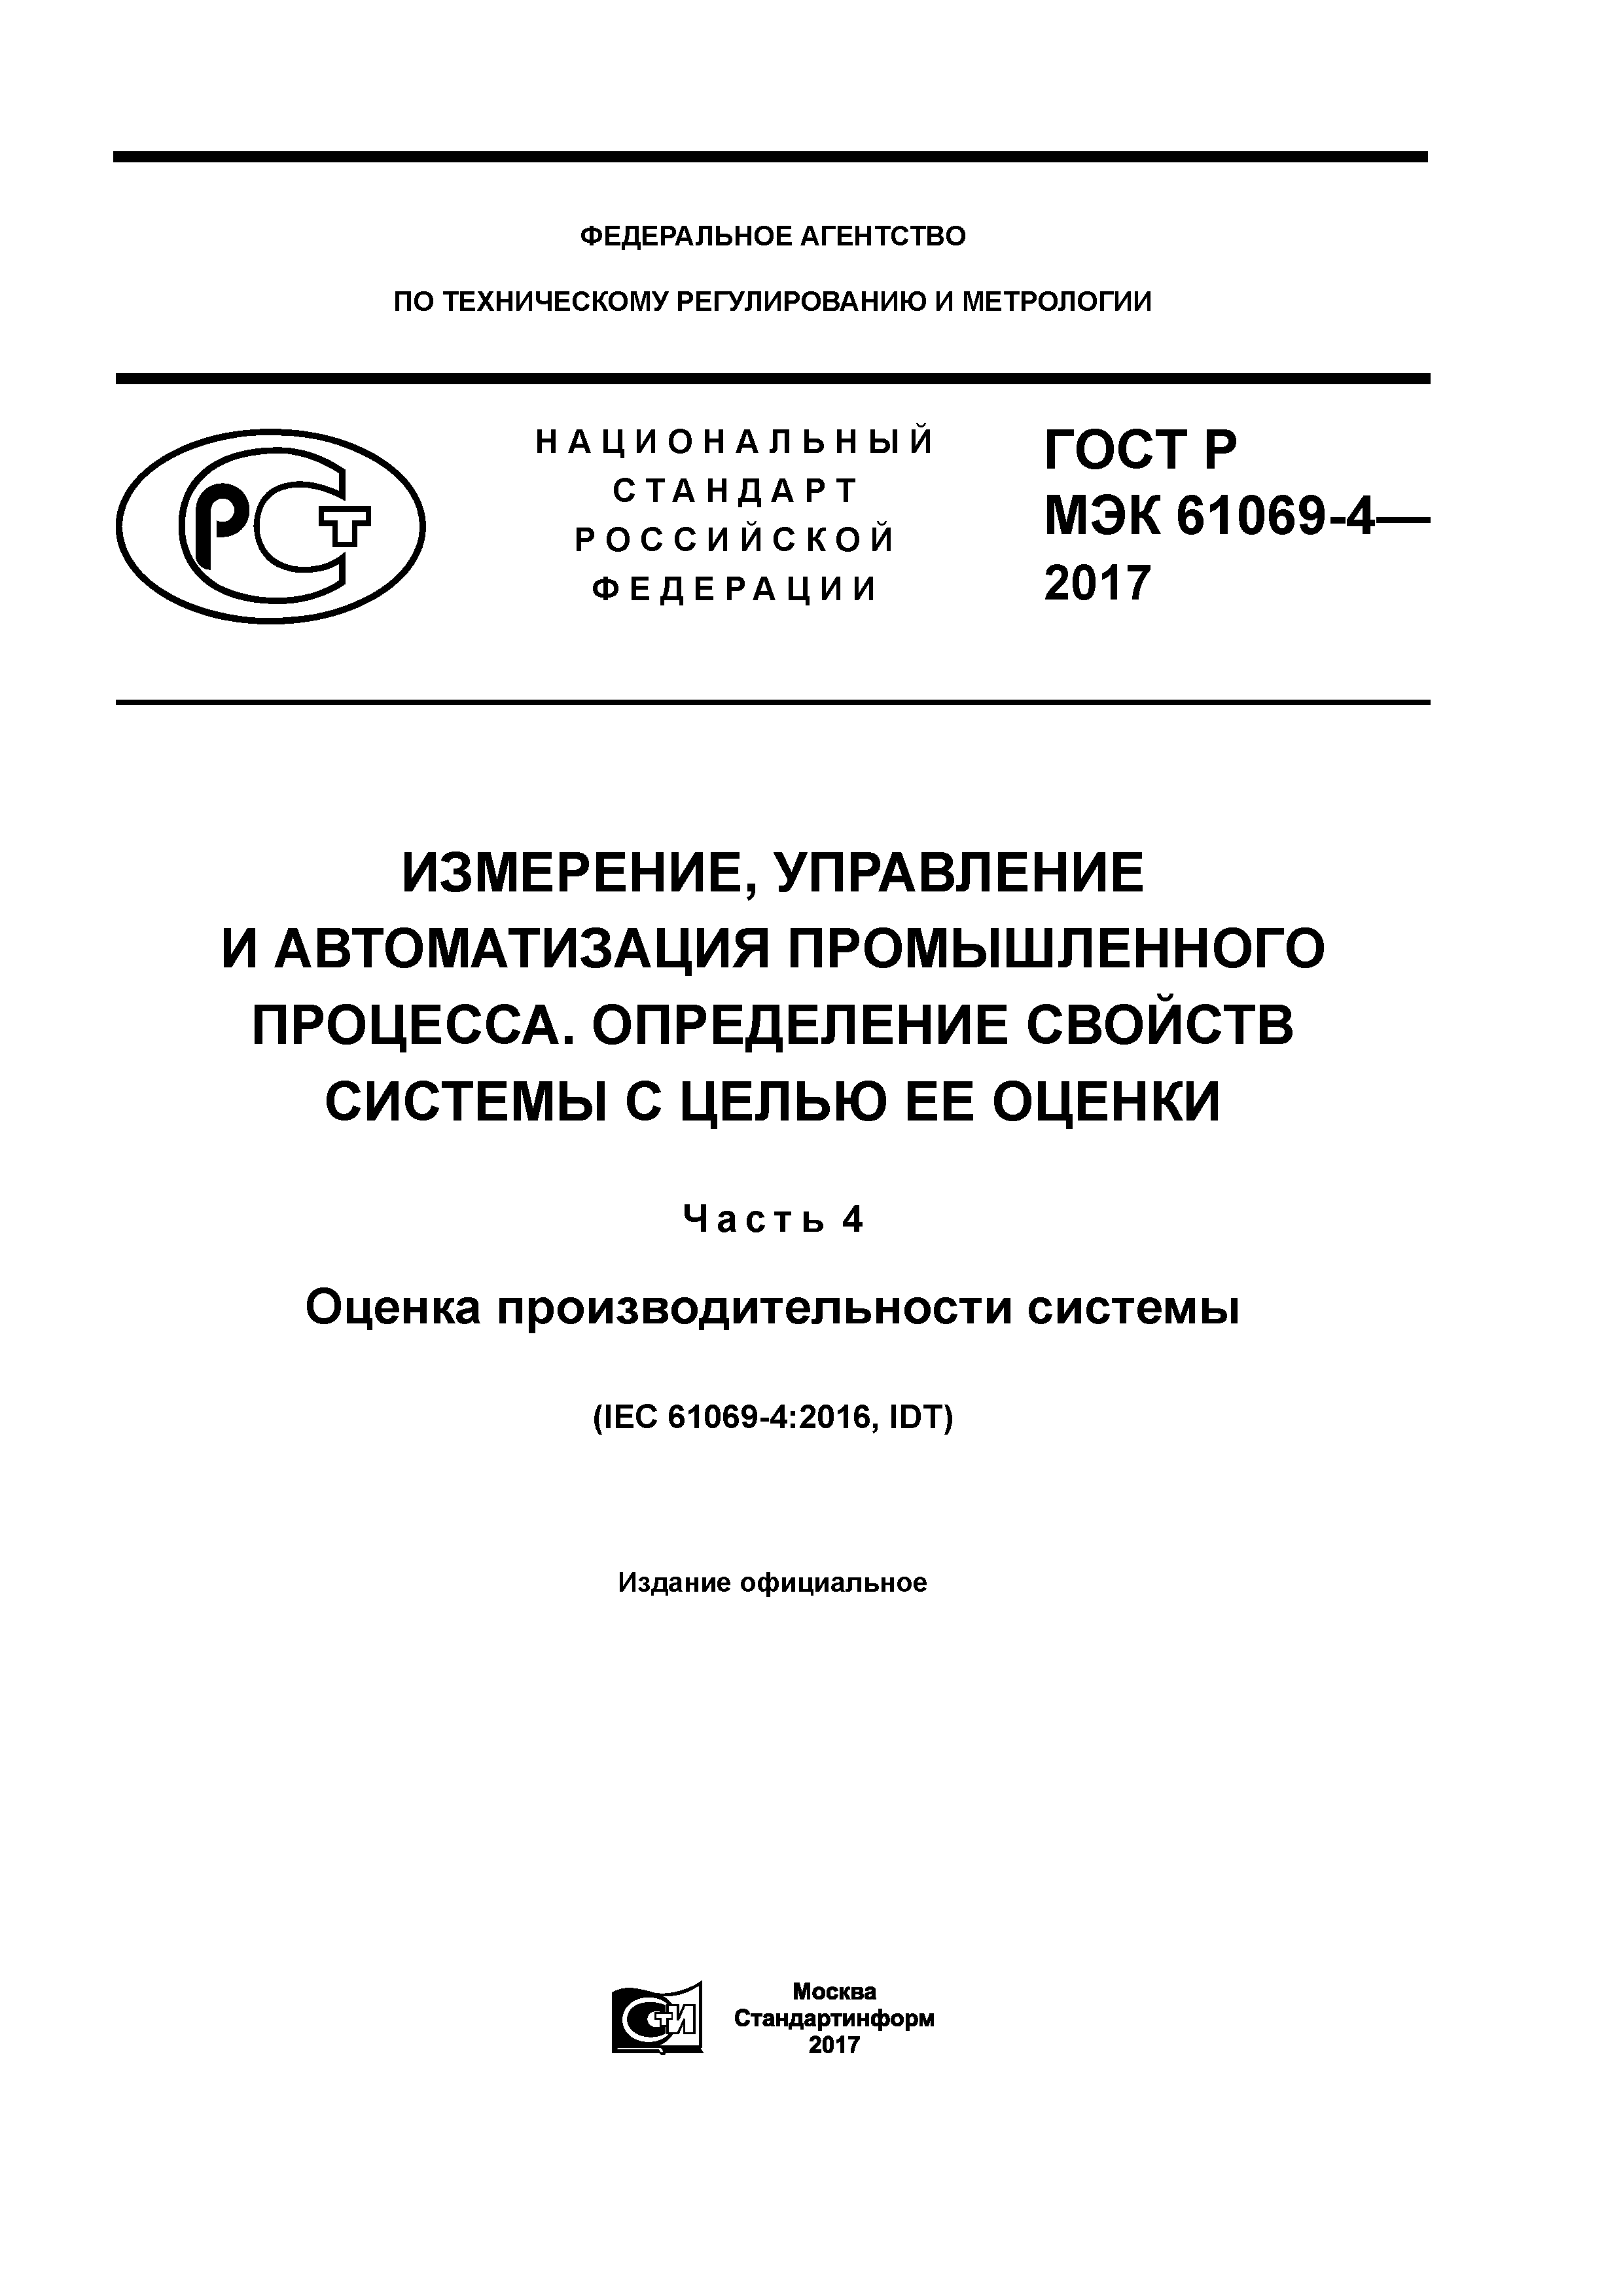 ГОСТ Р МЭК 61069-4-2017